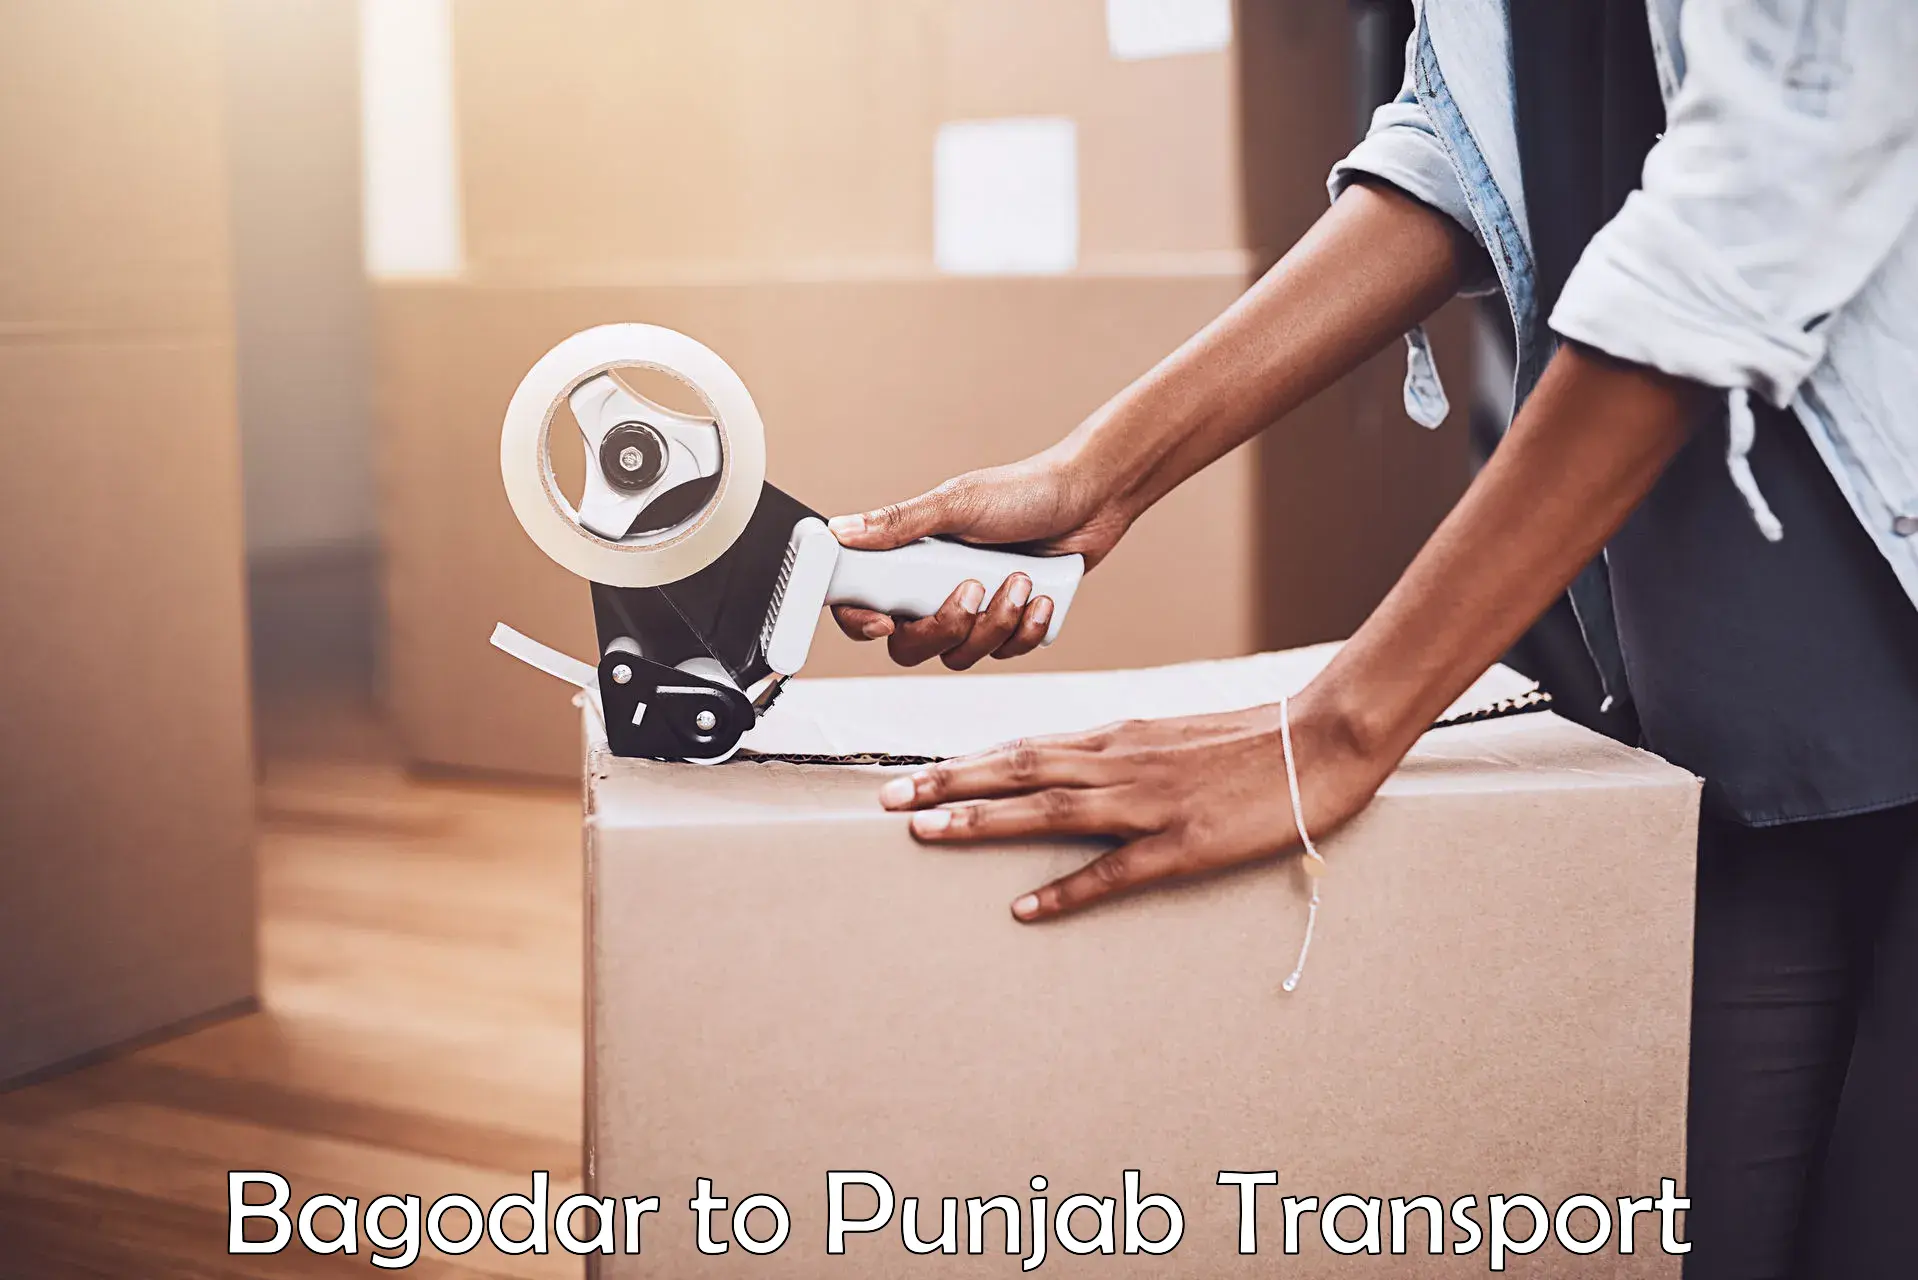 Commercial transport service Bagodar to Amritsar